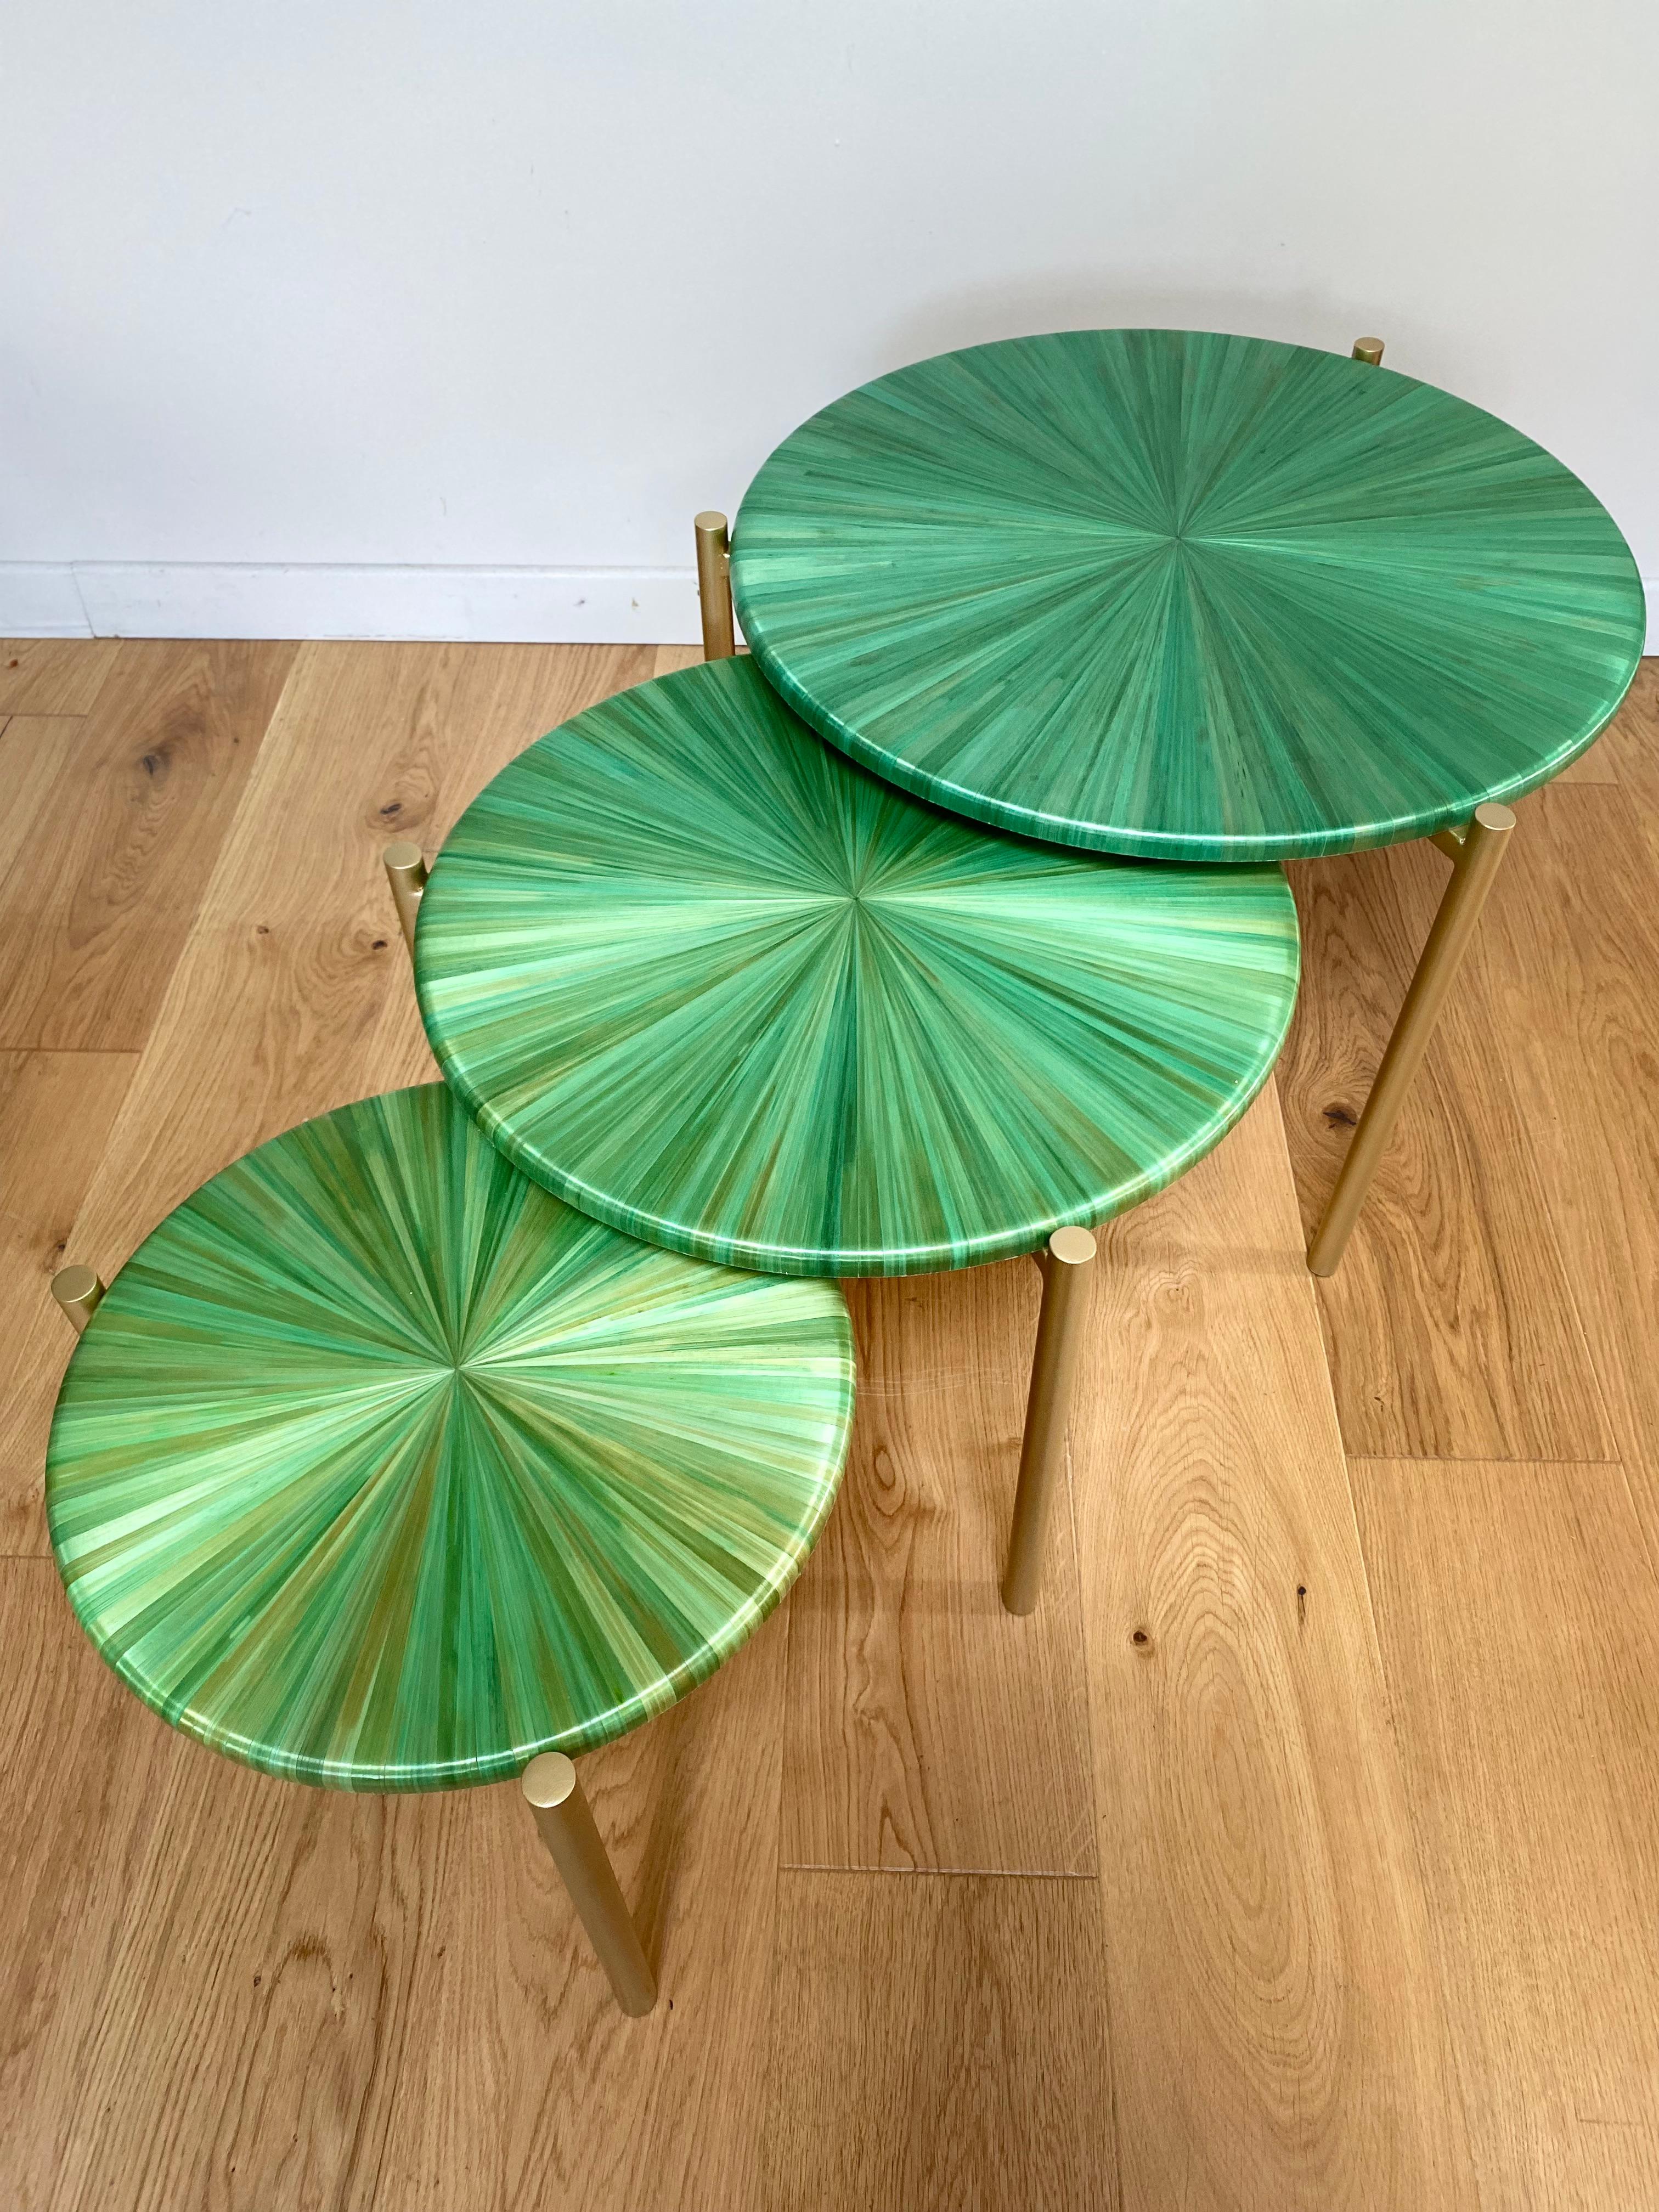 Woodwork Tables gigognes Soleils verts For Sale